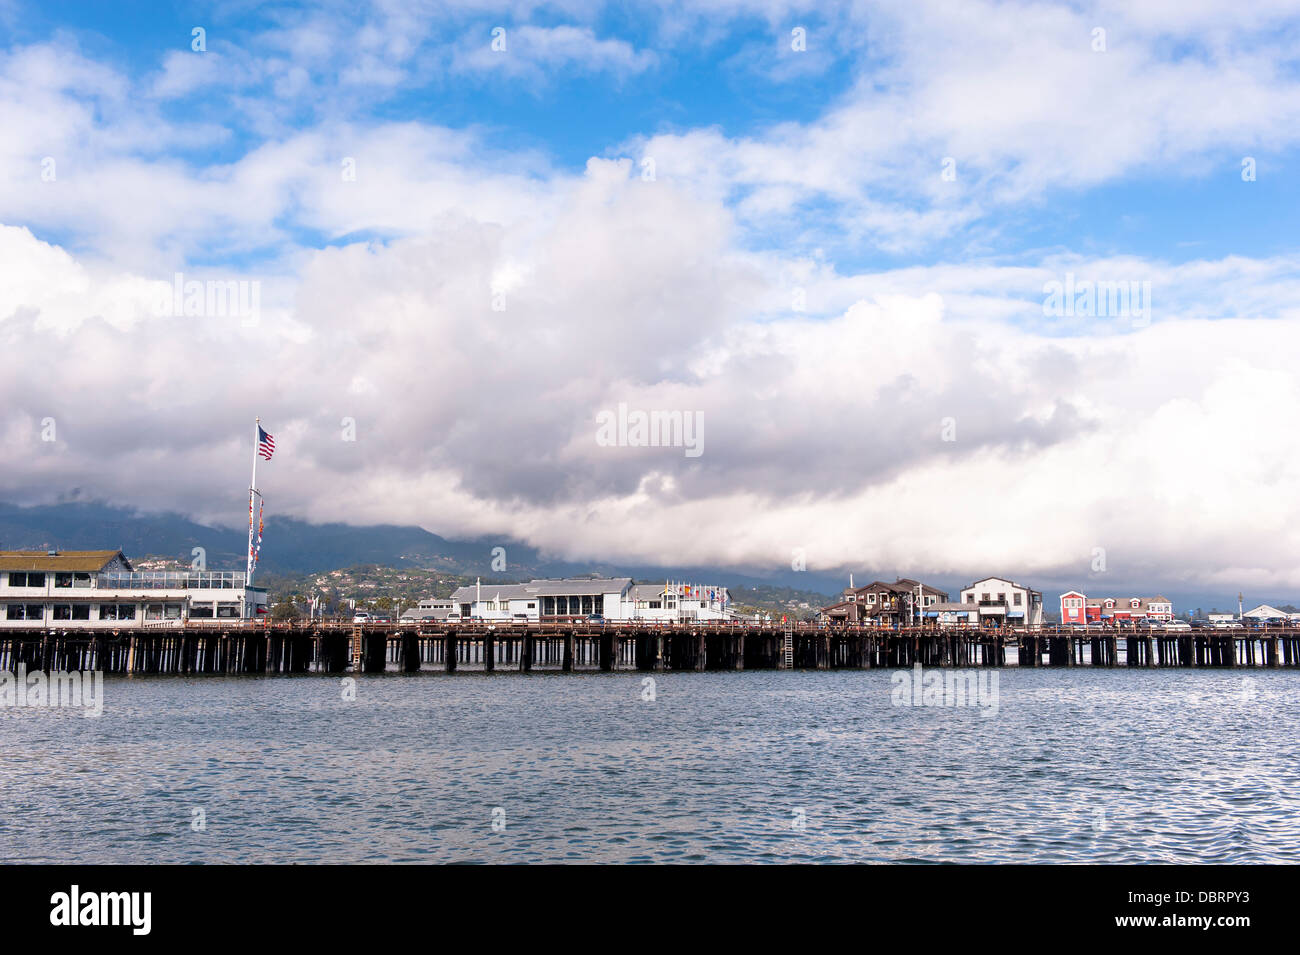 Santa Barbara Hafen Pier in Kalifornien bei einem hellen, bewölkten Frühlingstag. Stockfoto